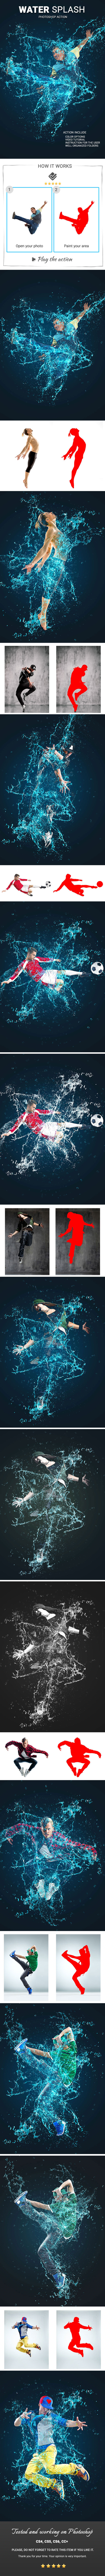 酷炫的动感水花喷溅PS动作下载 Water Splash Photoshop Action插图